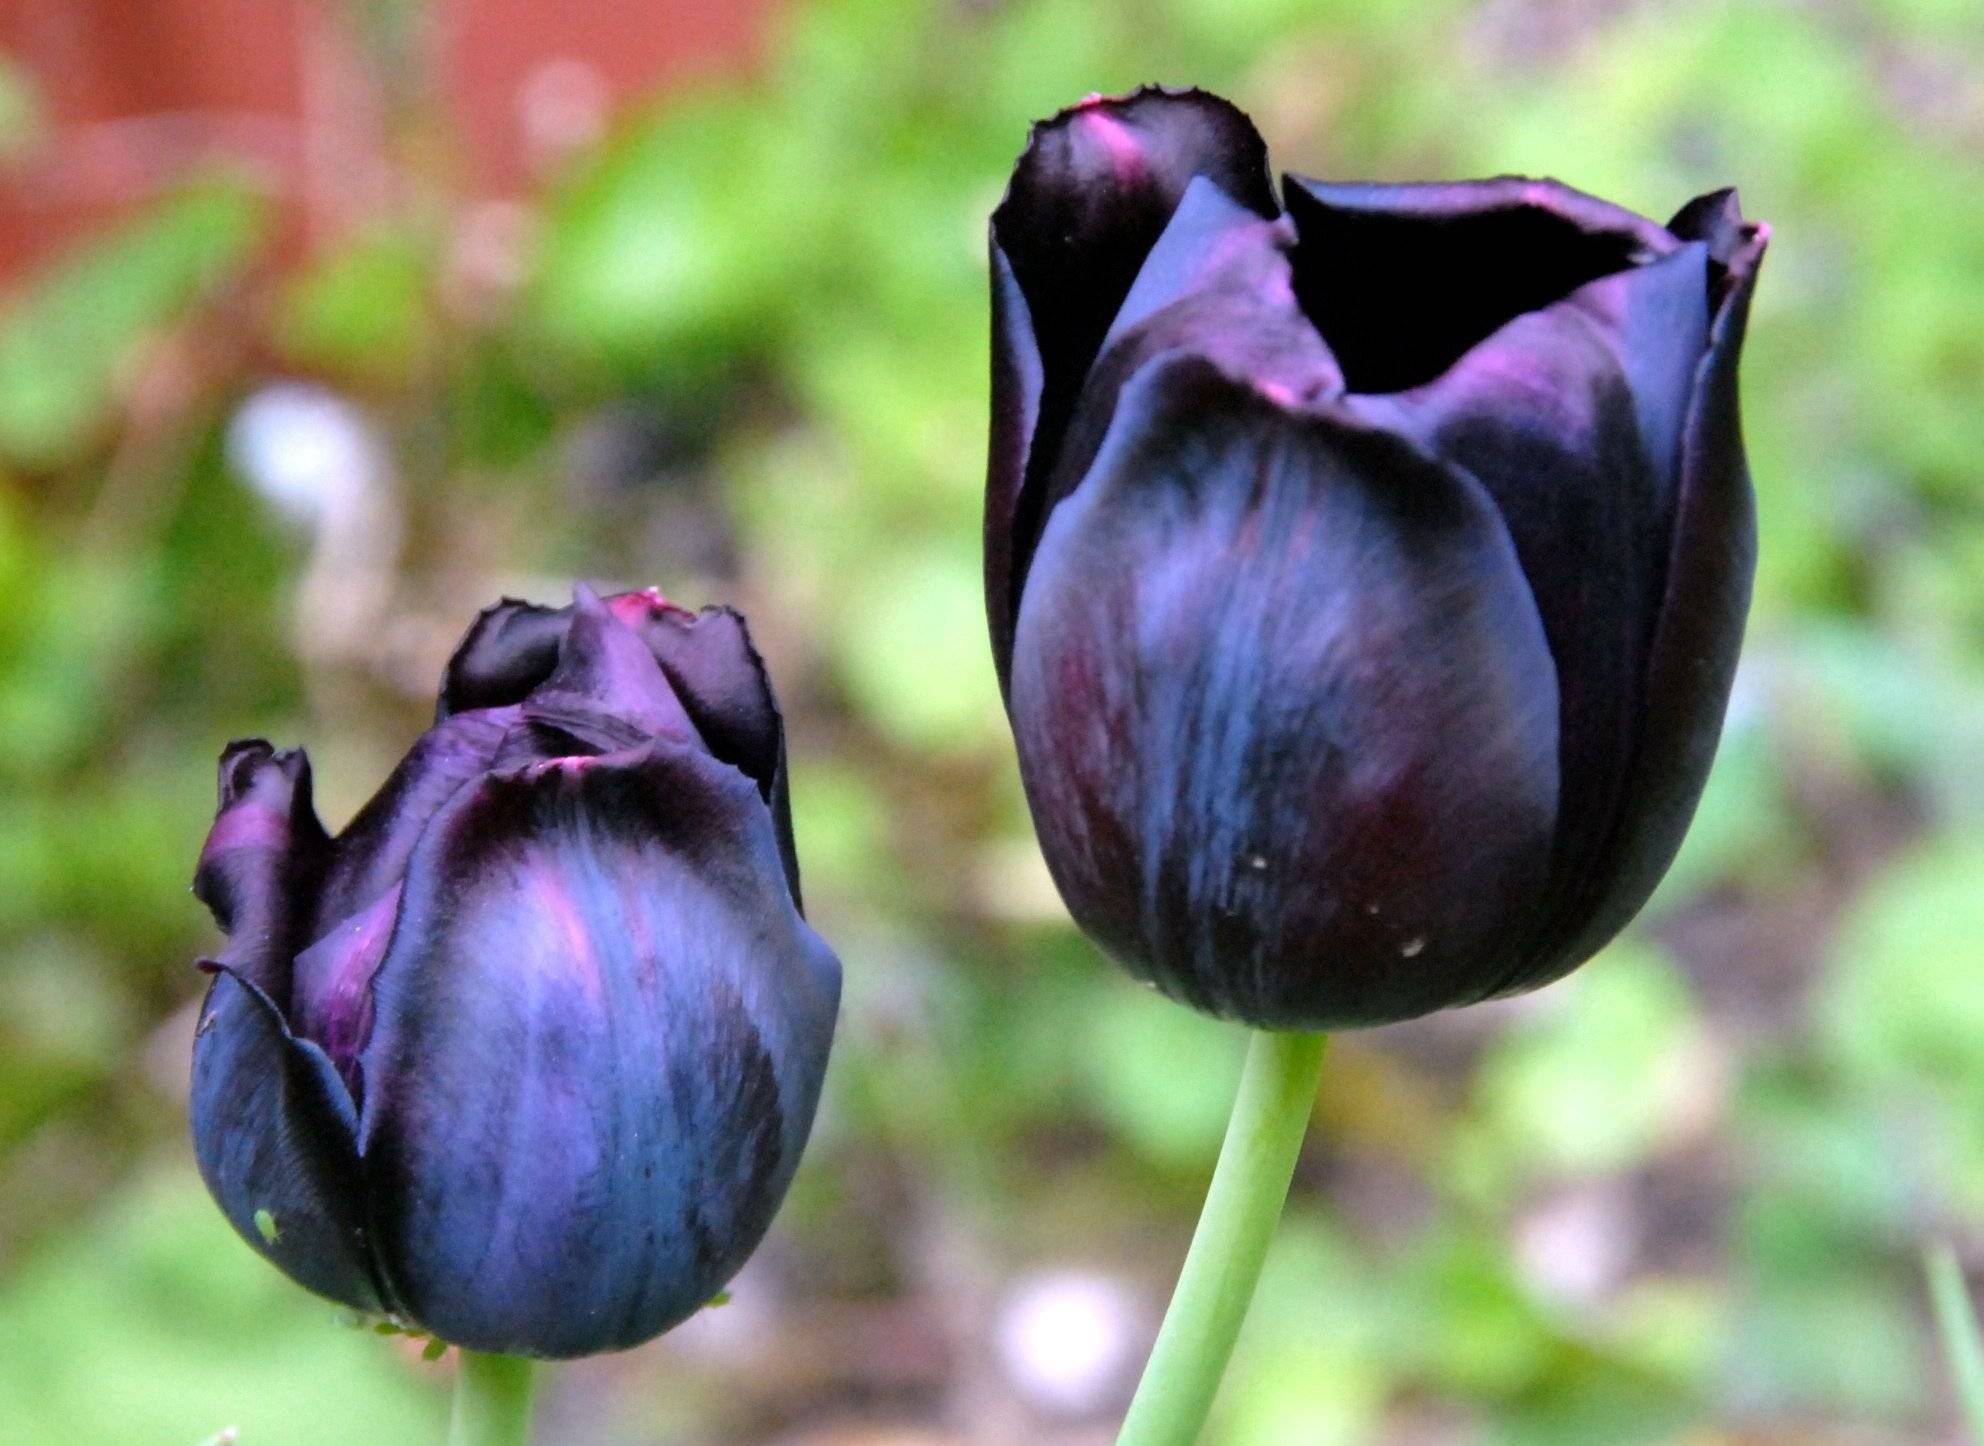 Черные И Синие Тюльпаны